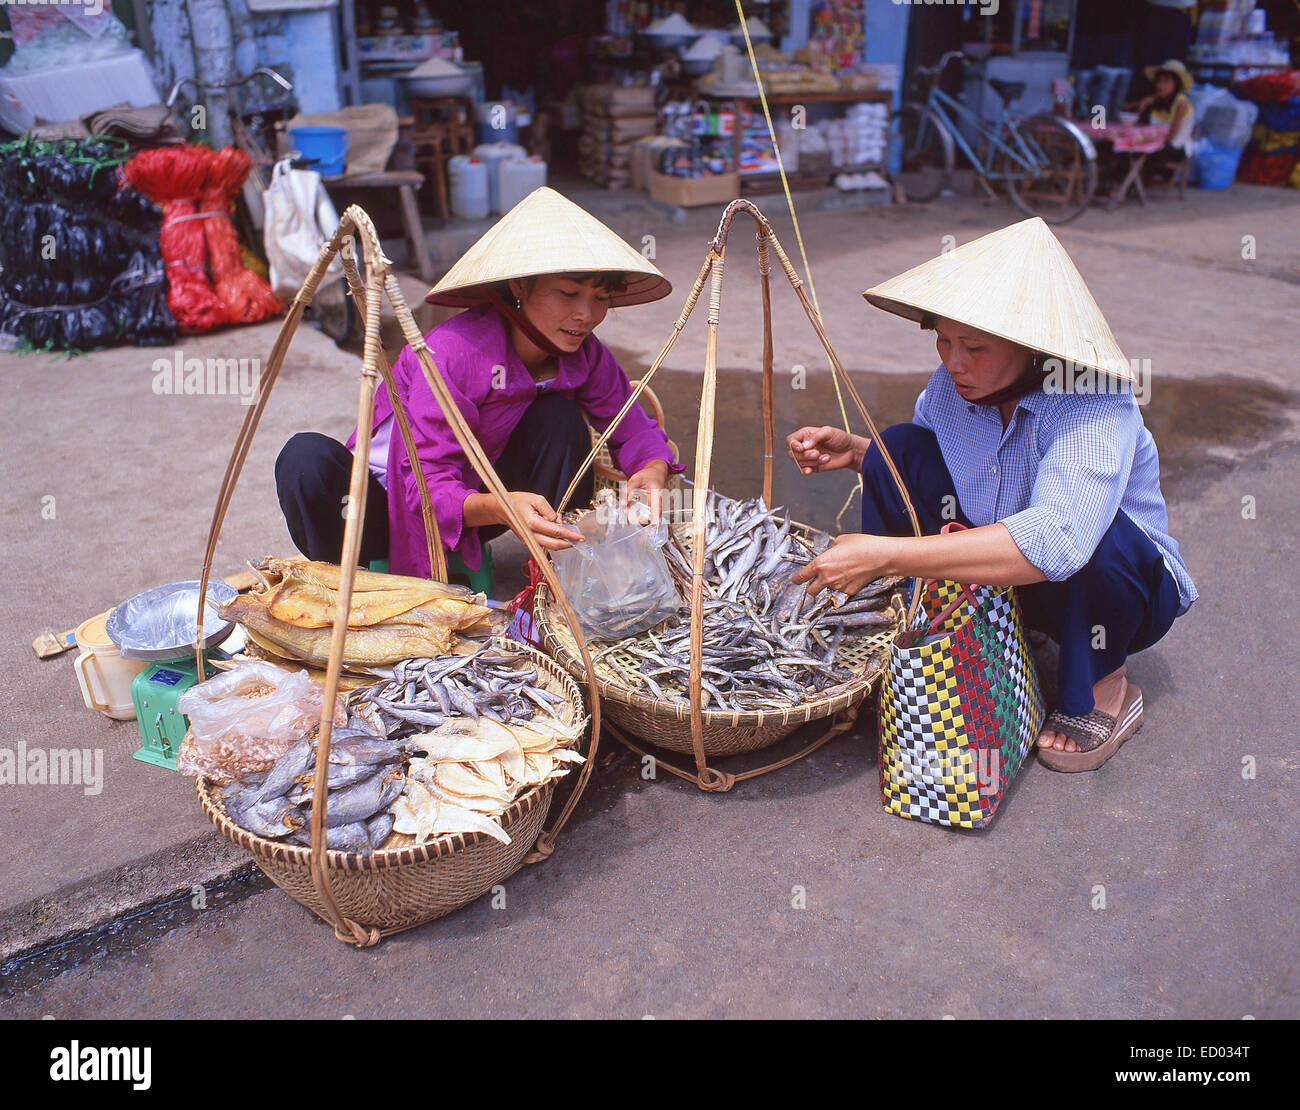 Donne che vendono pesce secco, mercato di Bình Tây, Cholon, Distretto 6, ho Chi Minh City (Saigon), Repubblica socialista del Vietnam Foto Stock